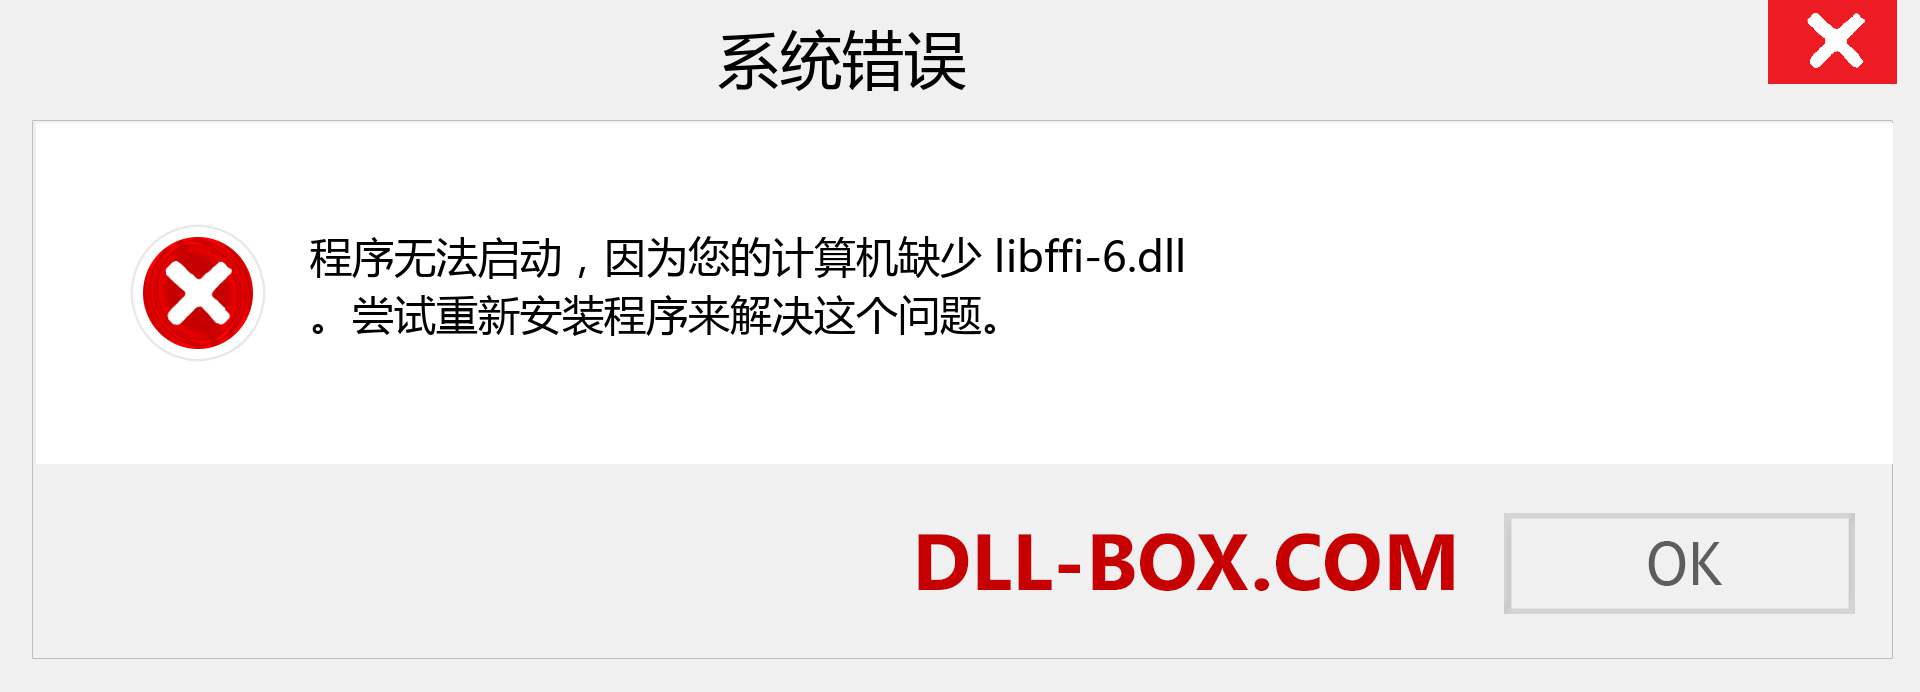 libffi-6.dll 文件丢失？。 适用于 Windows 7、8、10 的下载 - 修复 Windows、照片、图像上的 libffi-6 dll 丢失错误